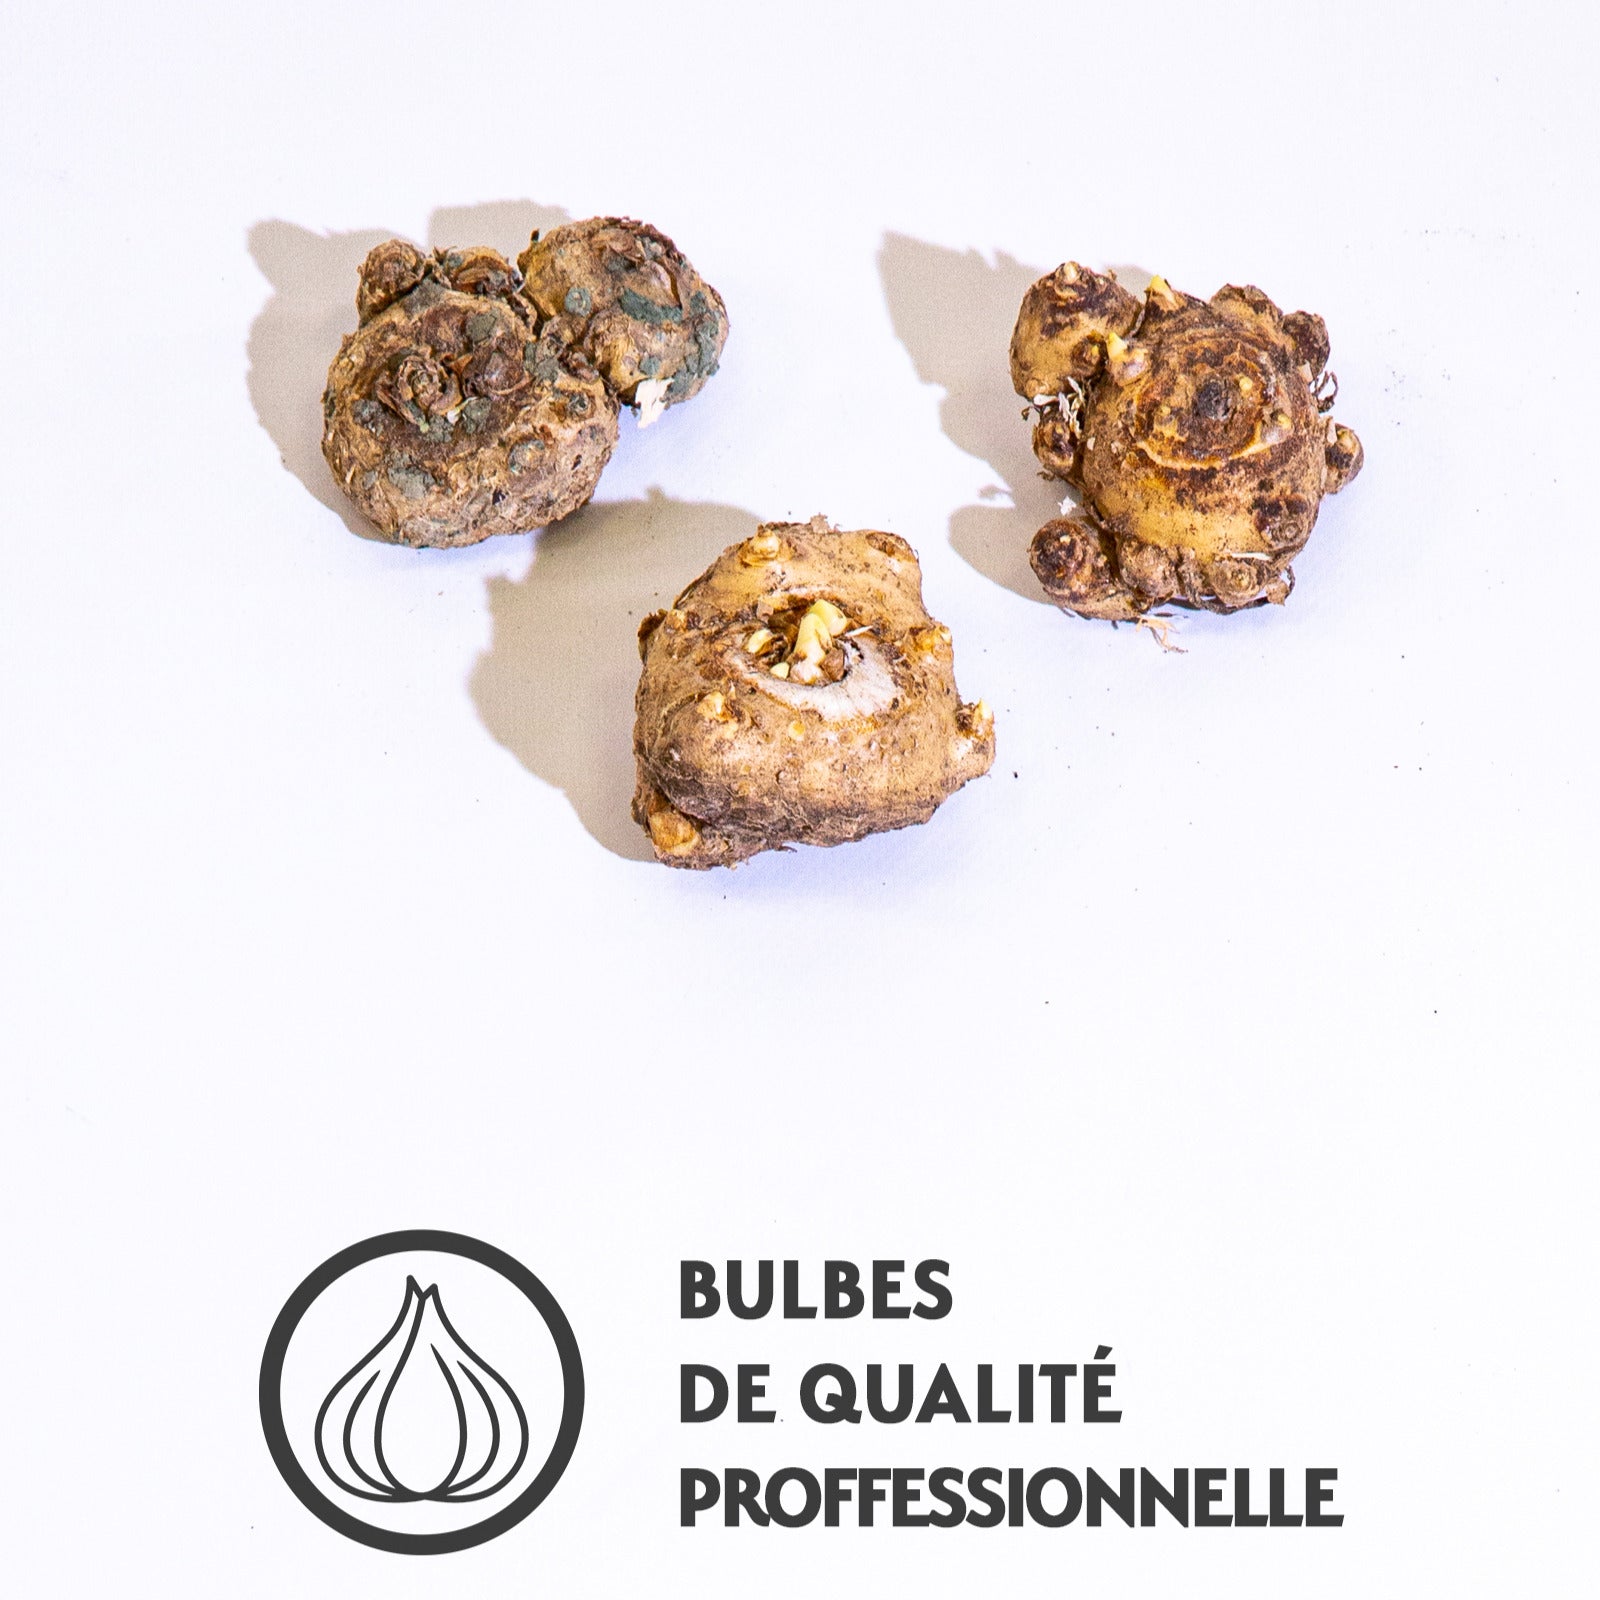 3 Callas en mélange (1 rose + 1 jaune + 1 pourpre) - Bakker.com | France